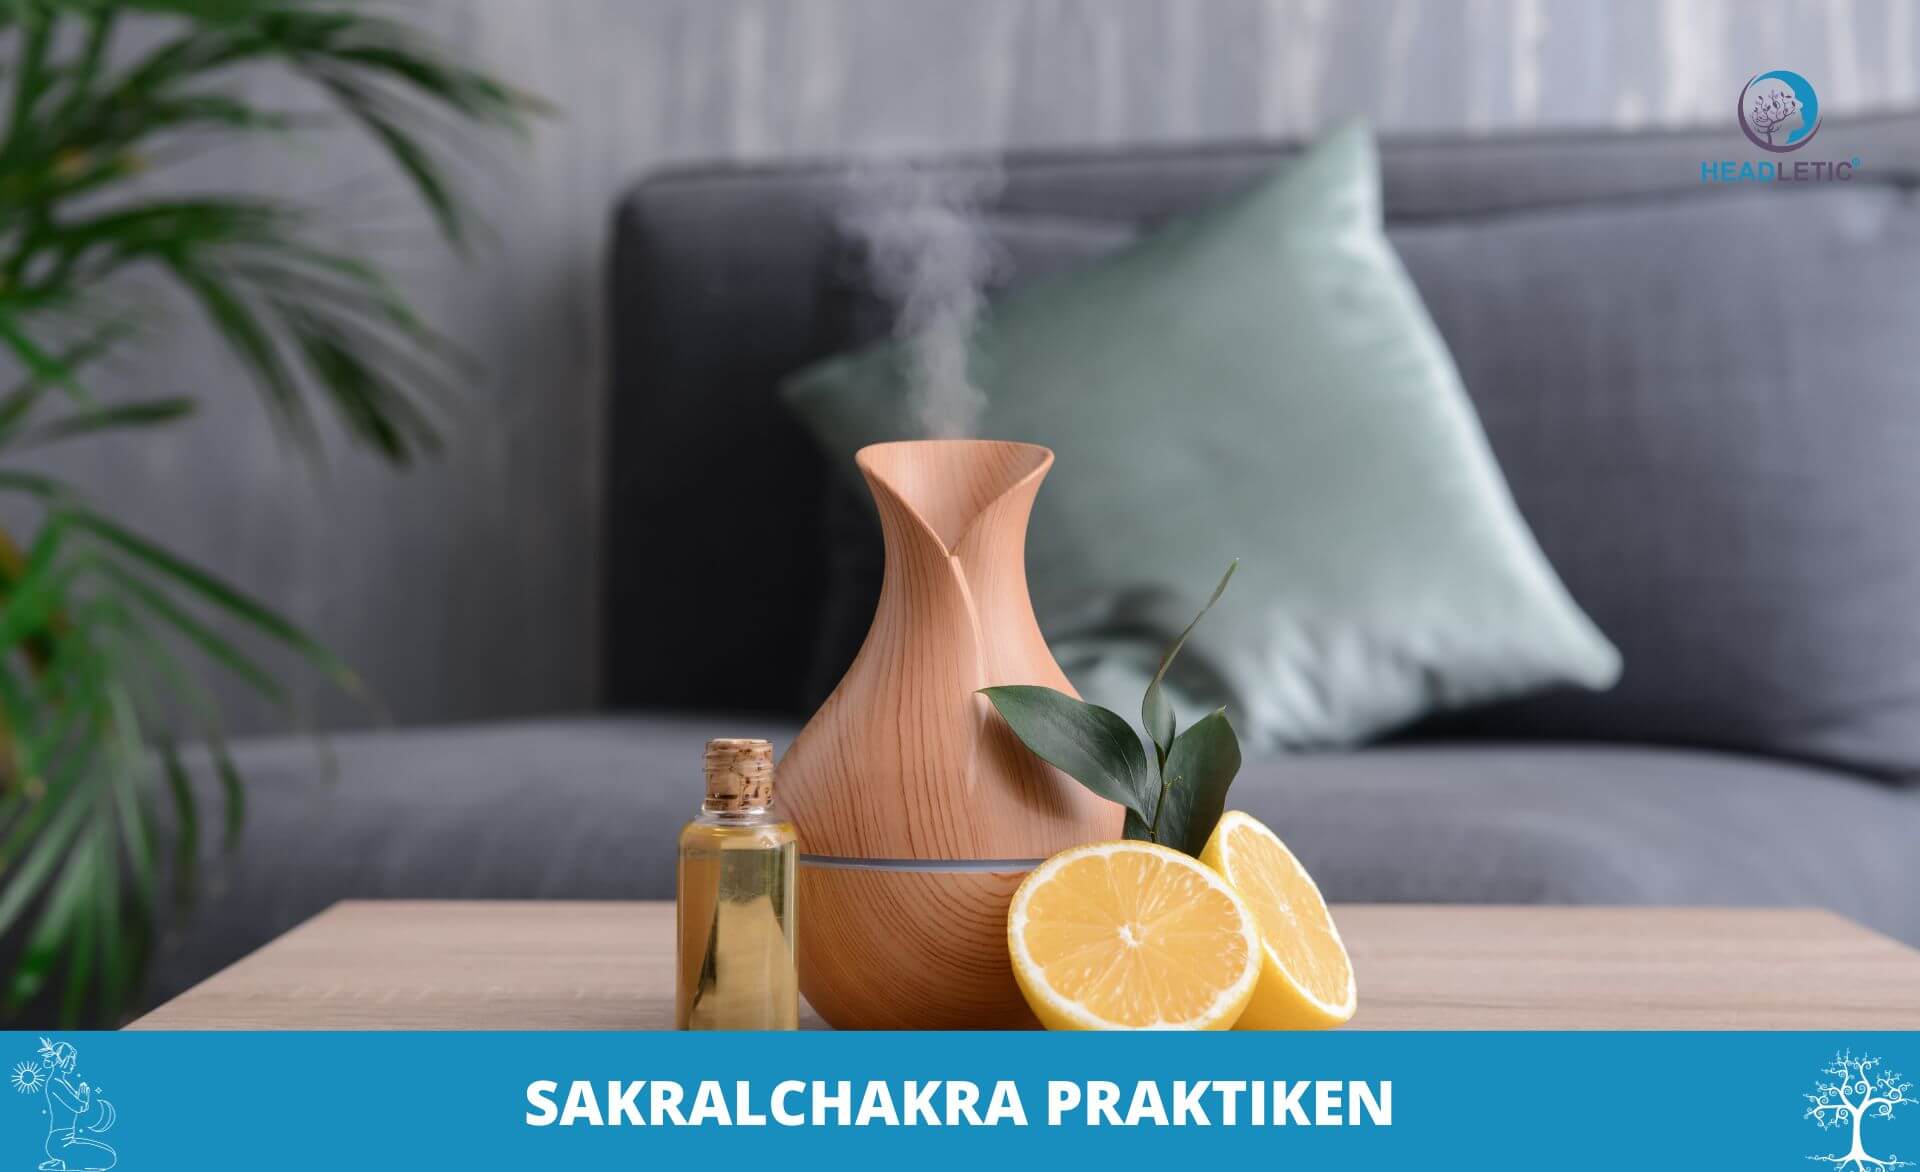 das richtige Aroma während der Meditation auf das Sakralchakra.